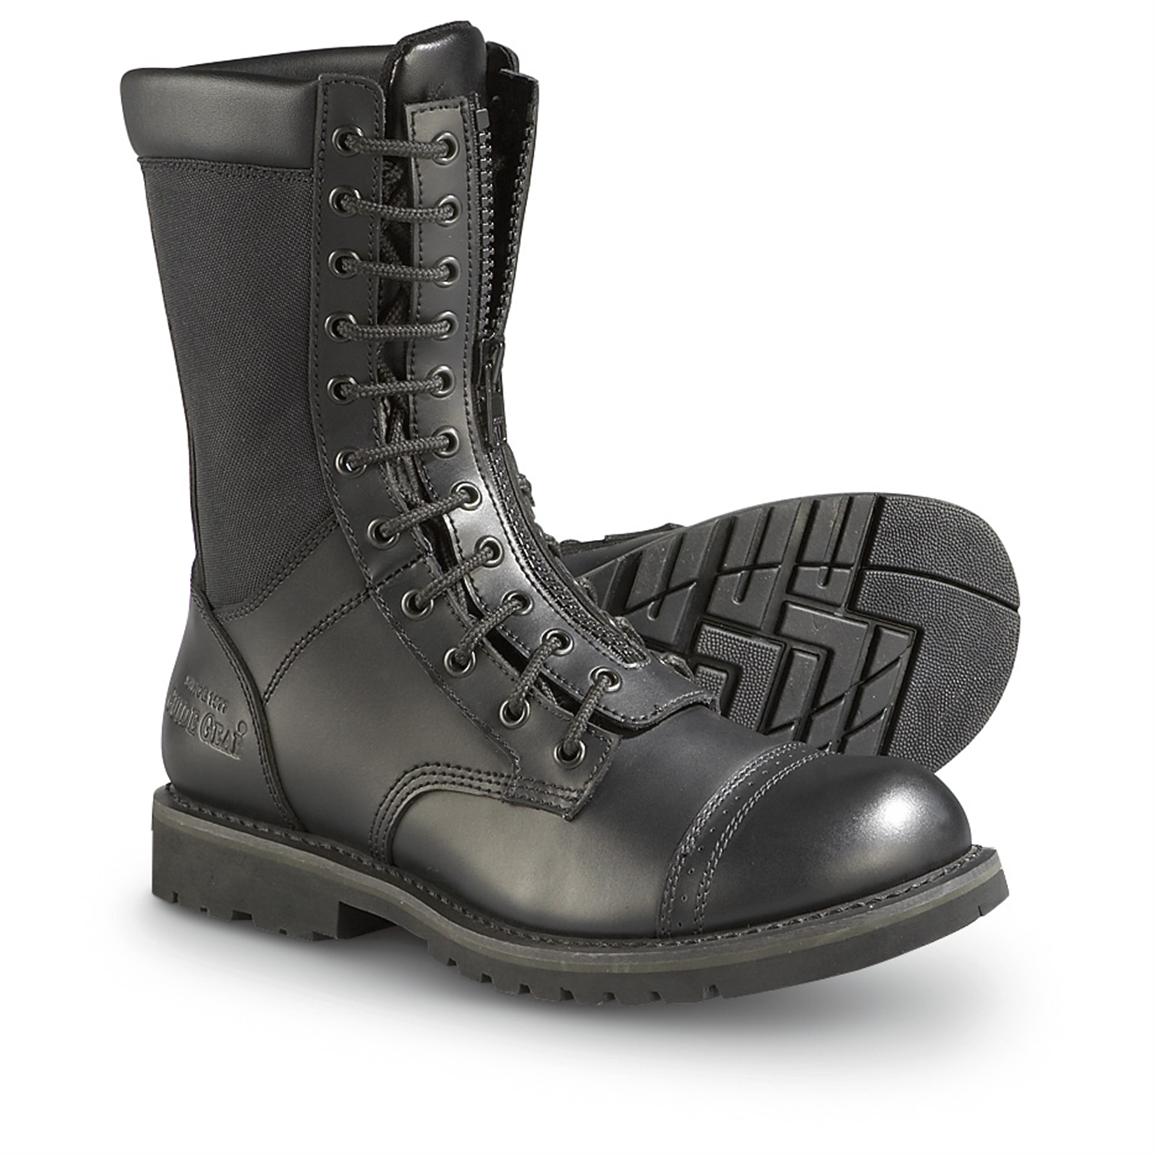 Men's Guide Gear® Uniform Boots, Black - 166835, Combat & Tactical ...